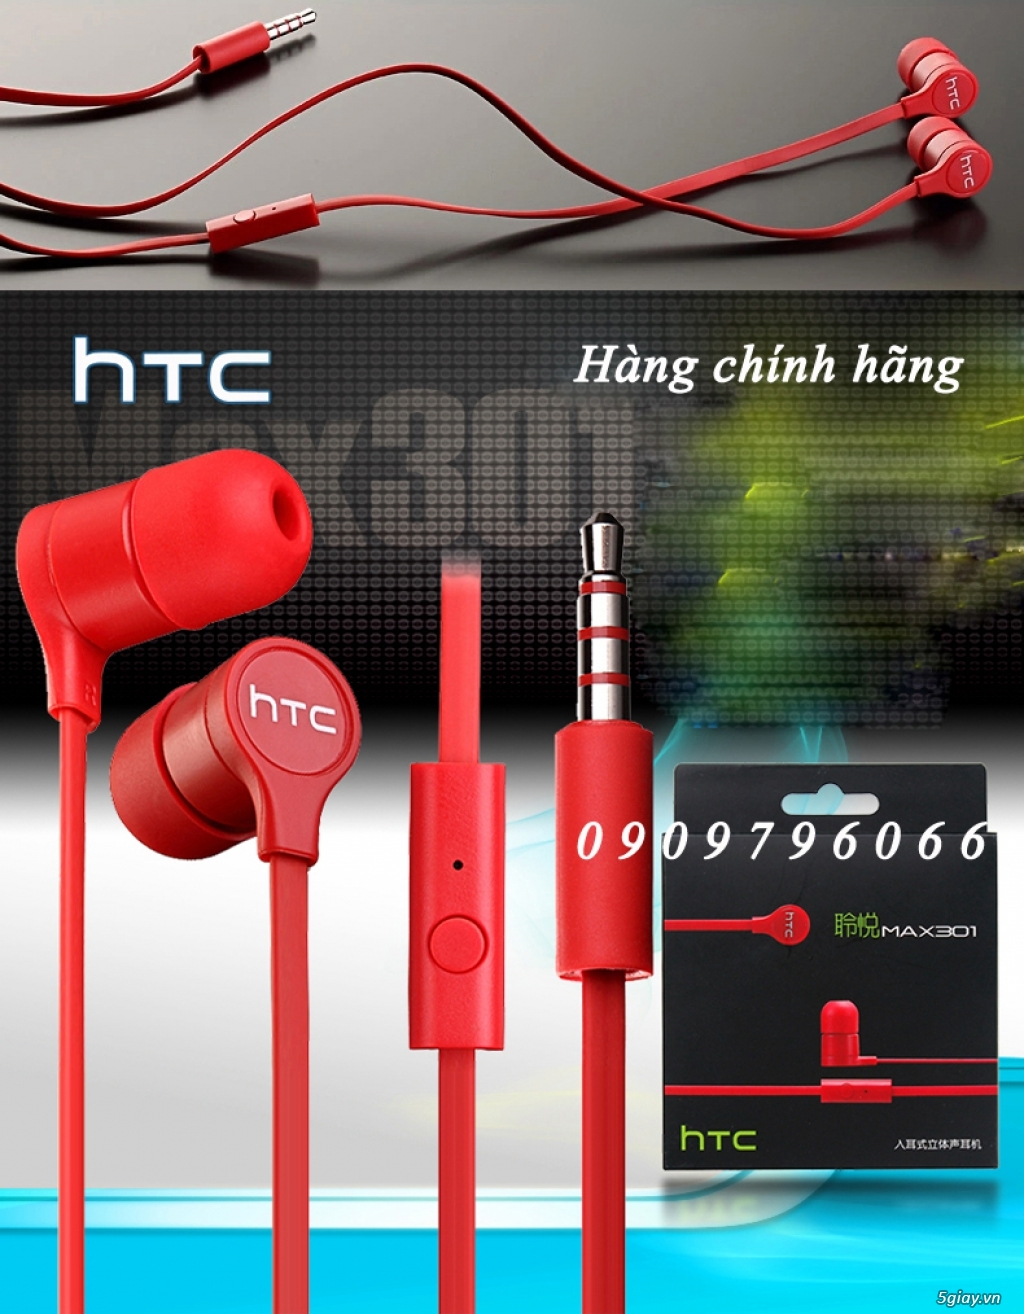 PKSTORE.VN >>> Tai nghe - Sạc - Cáp: HTC | APPLE | SamSung | Sony | LG| LUMIA| Beats...chính hãng<<< - 28